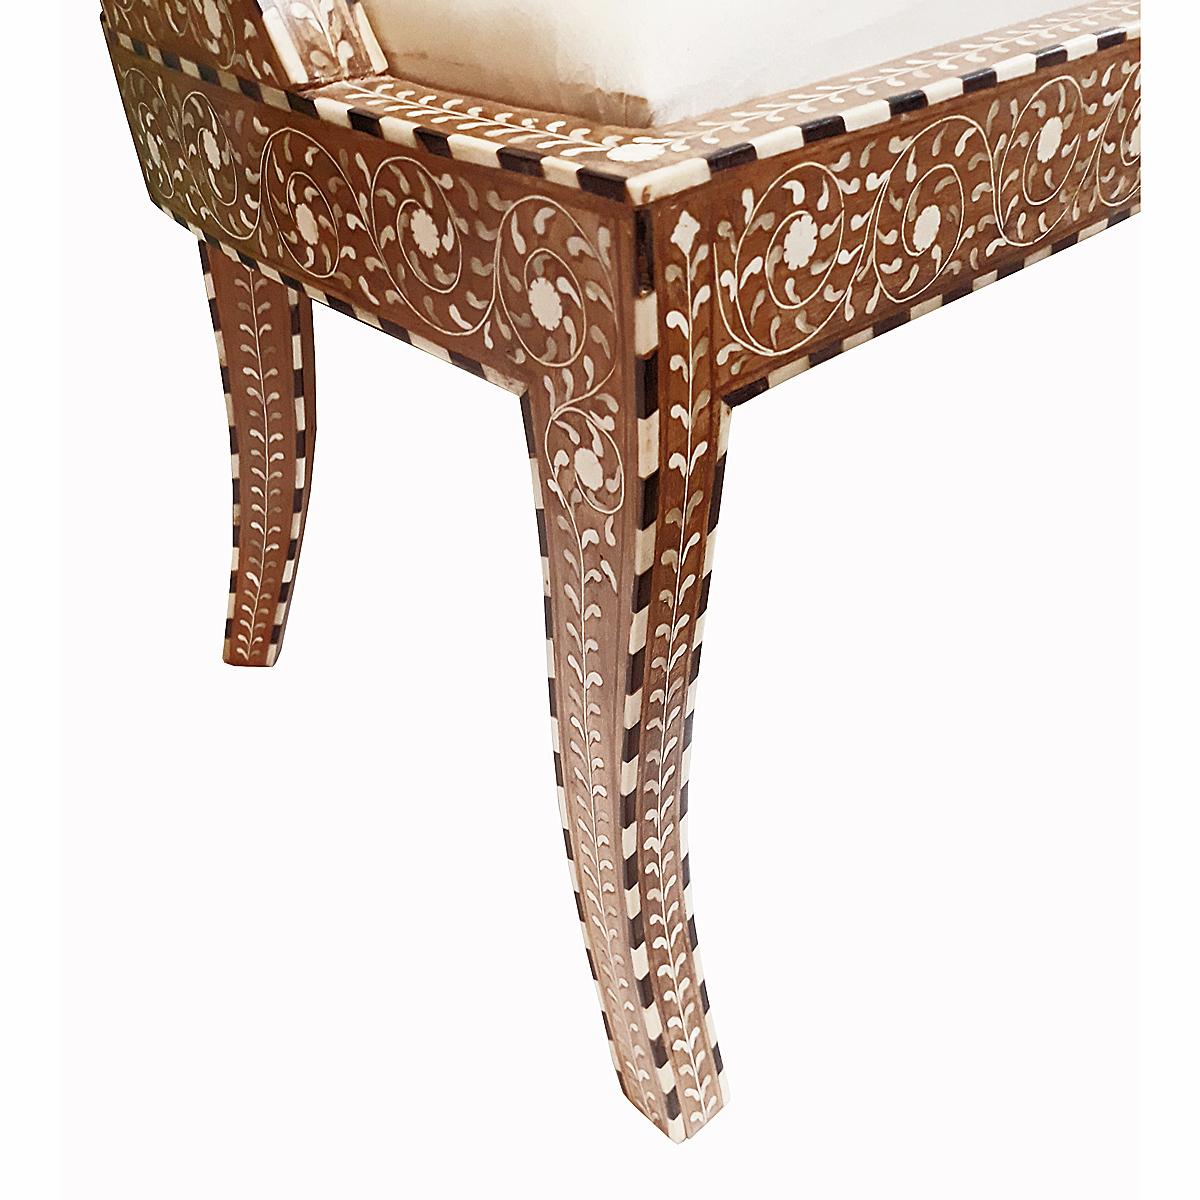 Bone-Inlaid Armless Chair with Cushion 3